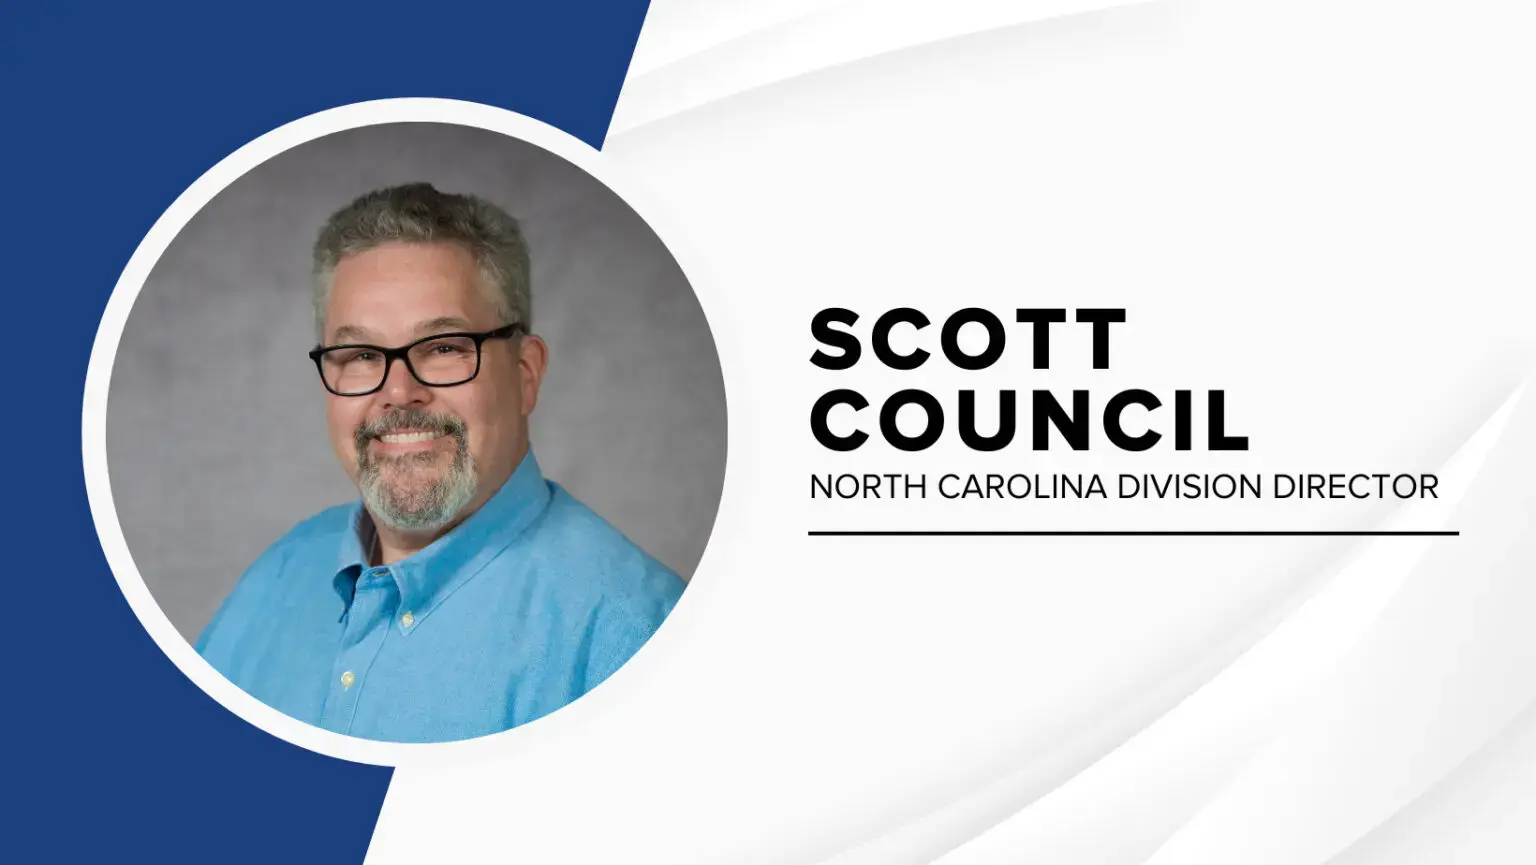 Scott Council Blog Image